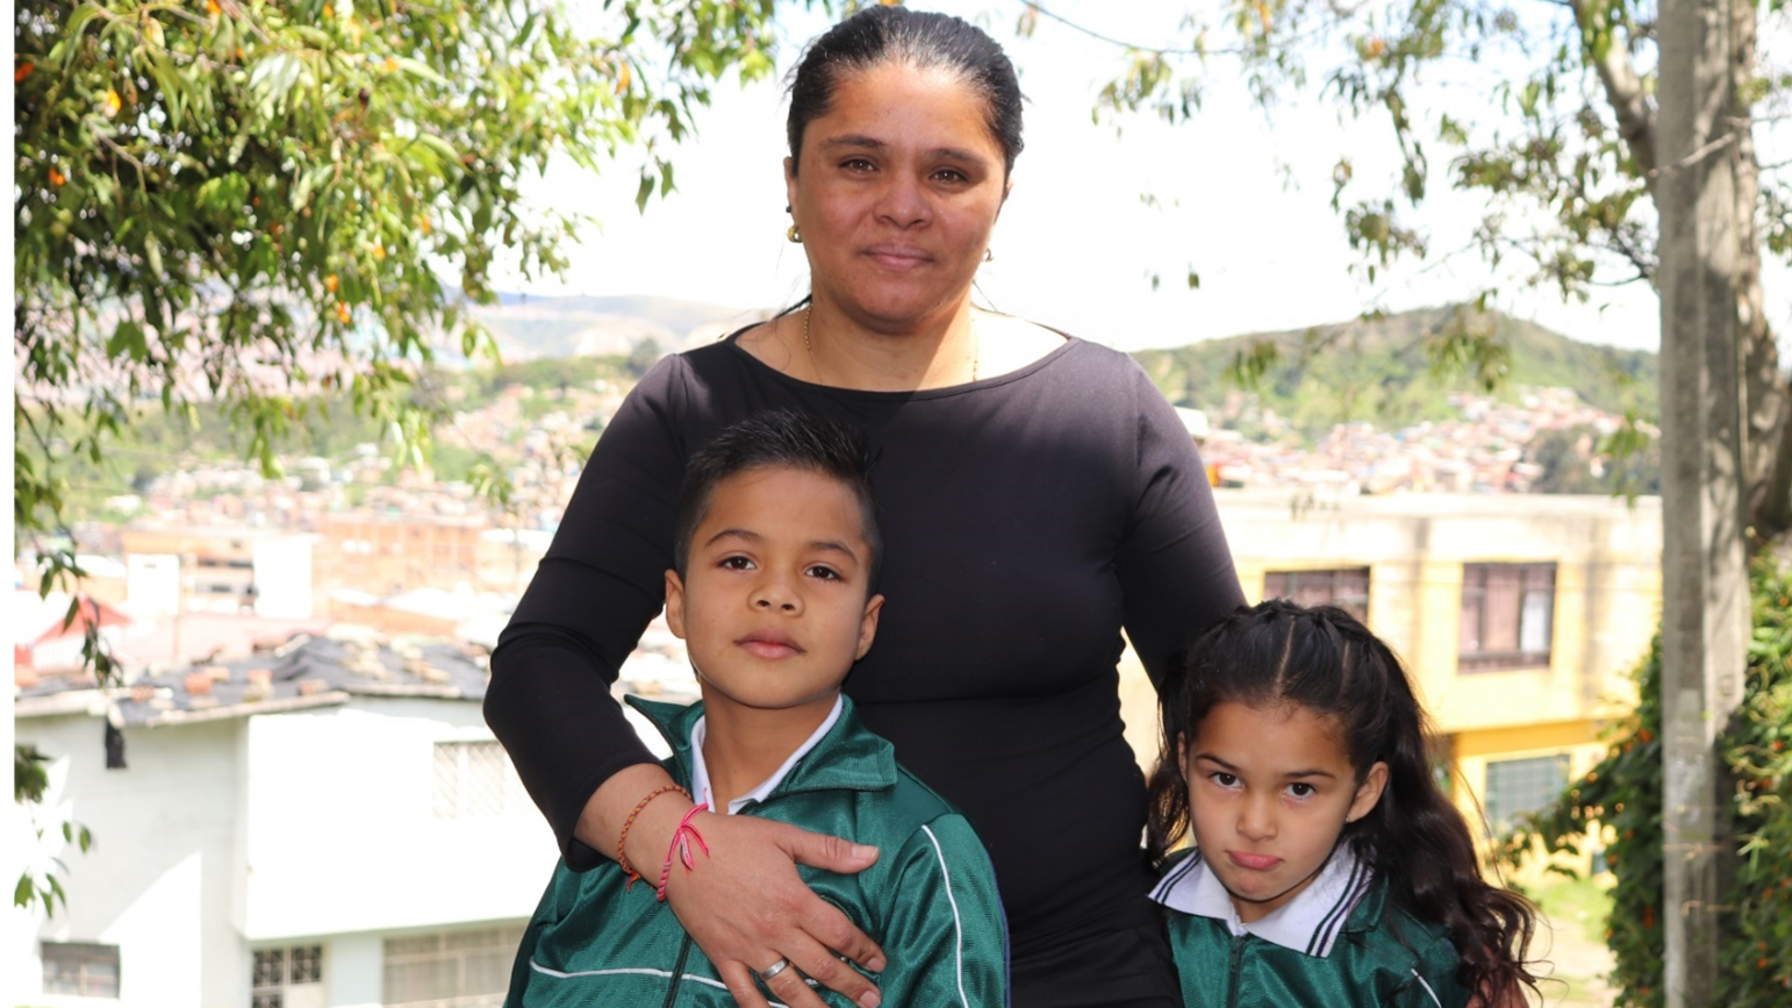 Oggi Mercedes Fernandez ha trovato un buon lavoro come collaboratrice domestica, che le permette di conciliare il lavoro con la cura dei figli.